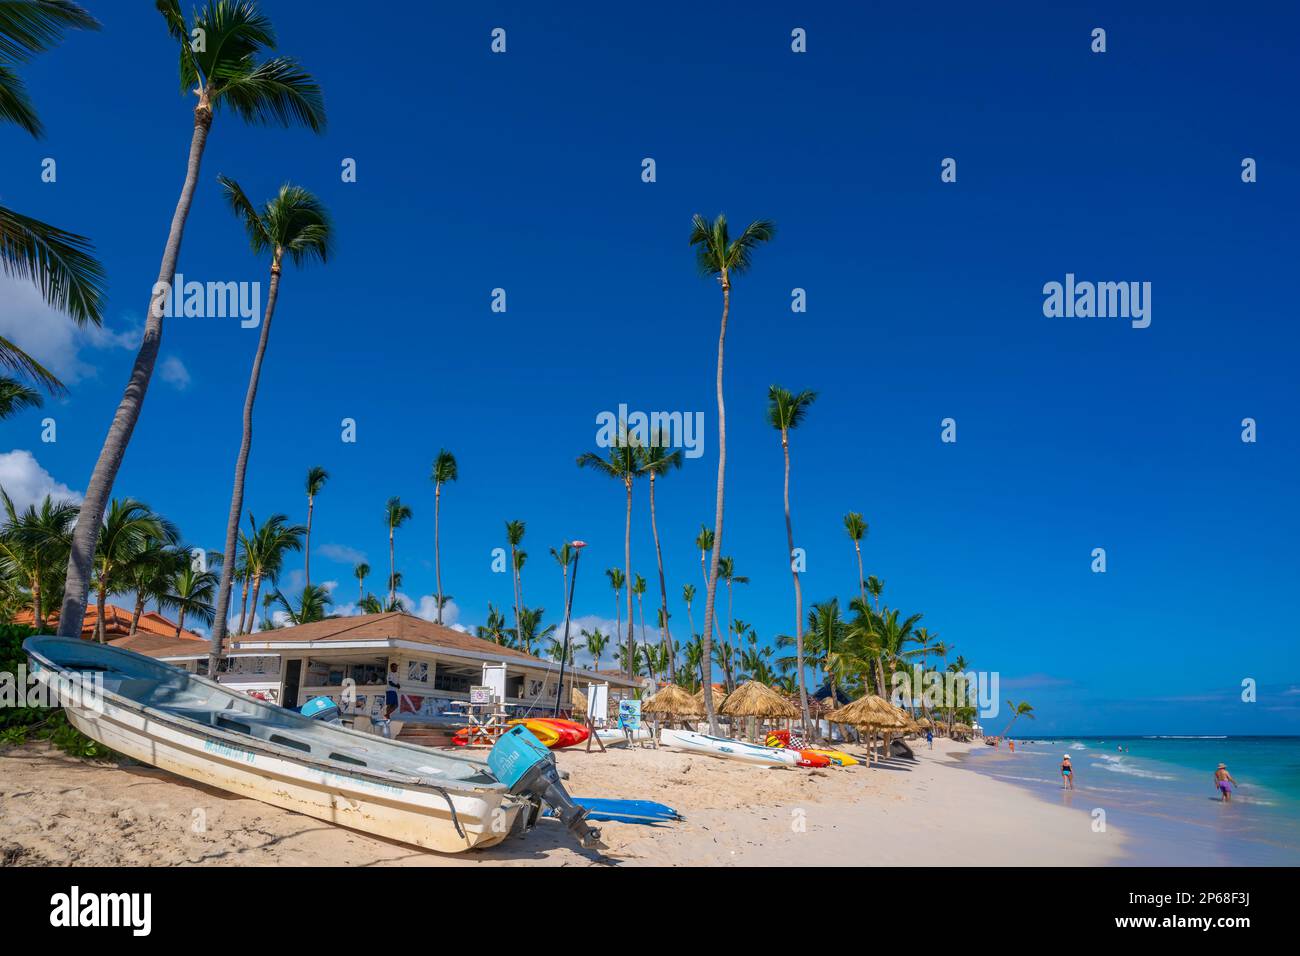 Vista del barco y las palmeras en la playa de Bávaro, Punta Cana, República Dominicana, Indias Occidentales, Caribe, Centroamérica Foto de stock